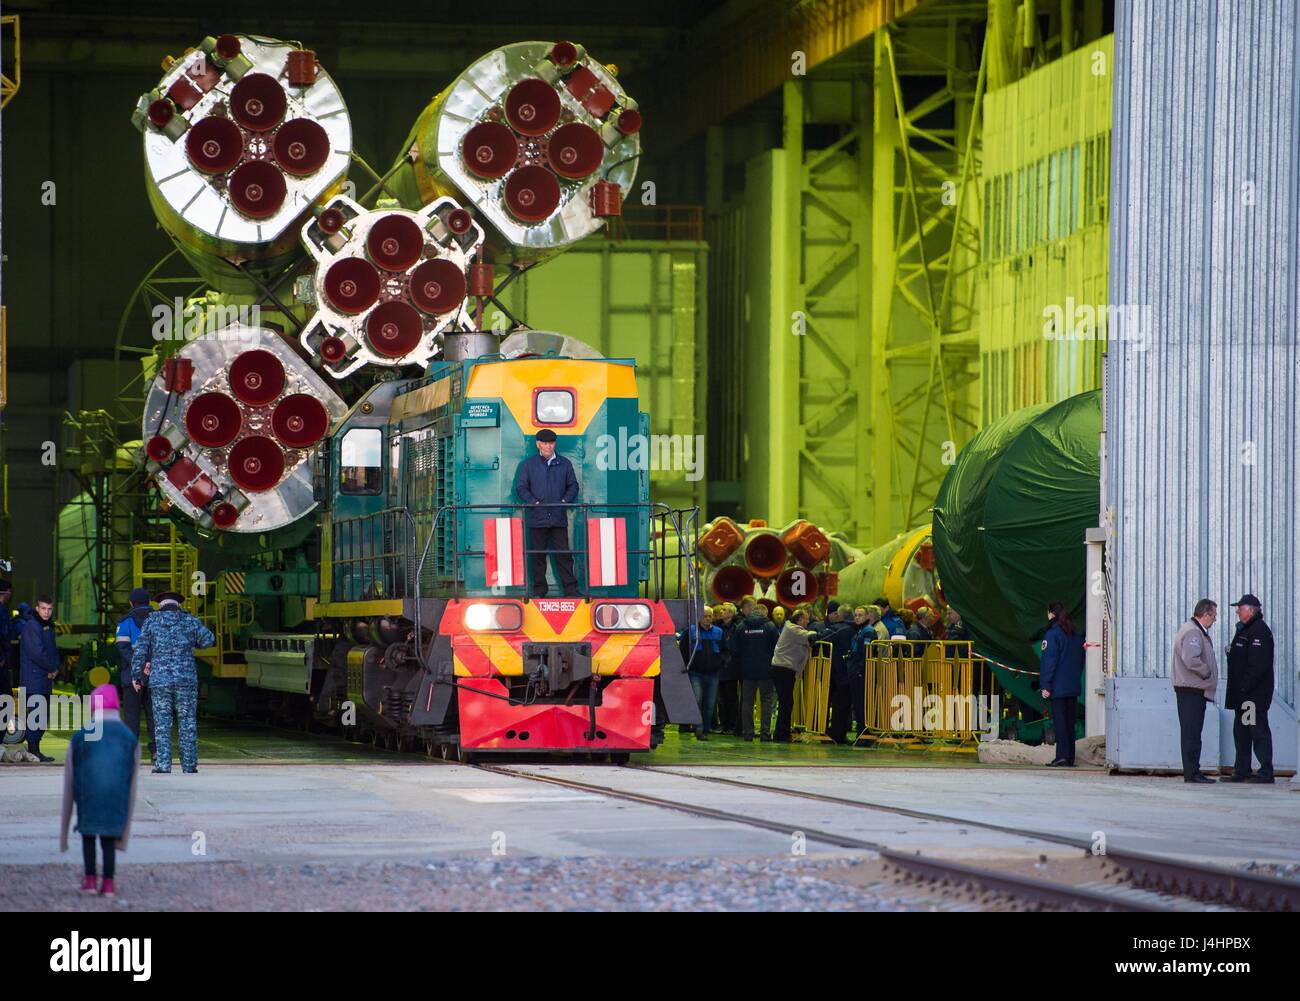 Die Sojus MS-04 Raumschiff Rakete wird zur Startrampe Kosmodrom Baikonur in Vorbereitung für den Start der NASA internationale Raumstation ISS-Expedition 51 17. April 2017 in Baikonur, Kasachstan gerollt.     (Foto von Aubrey Gemignani /NASA über Planetpix) Stockfoto